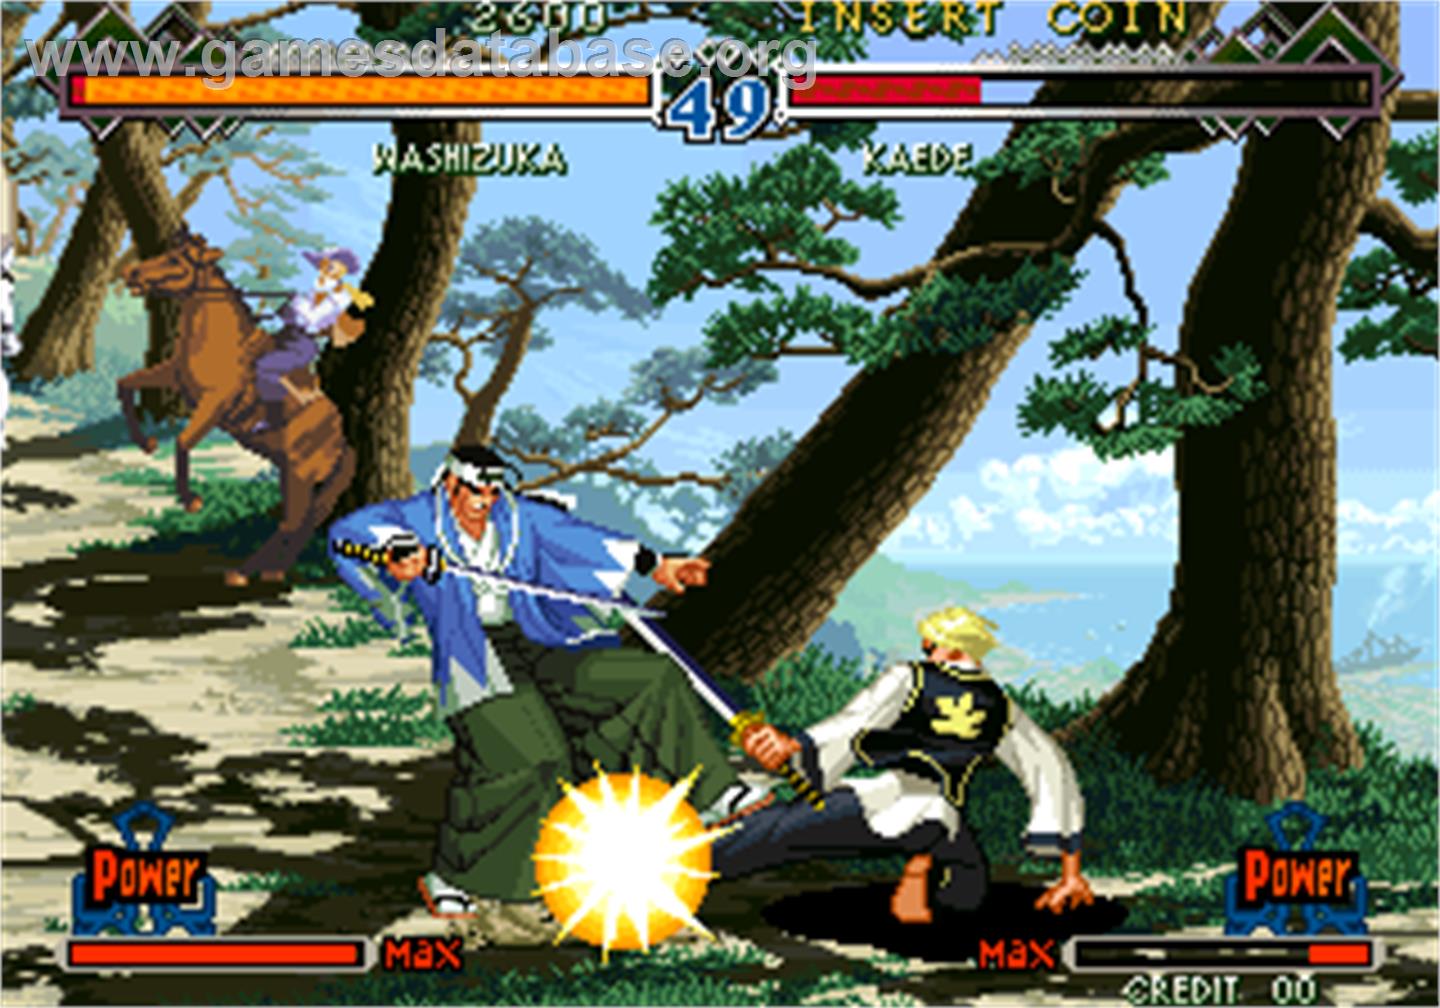 The Last Blade 2 / Bakumatsu Roman - Dai Ni Maku Gekka no Kenshi - Arcade - Artwork - In Game